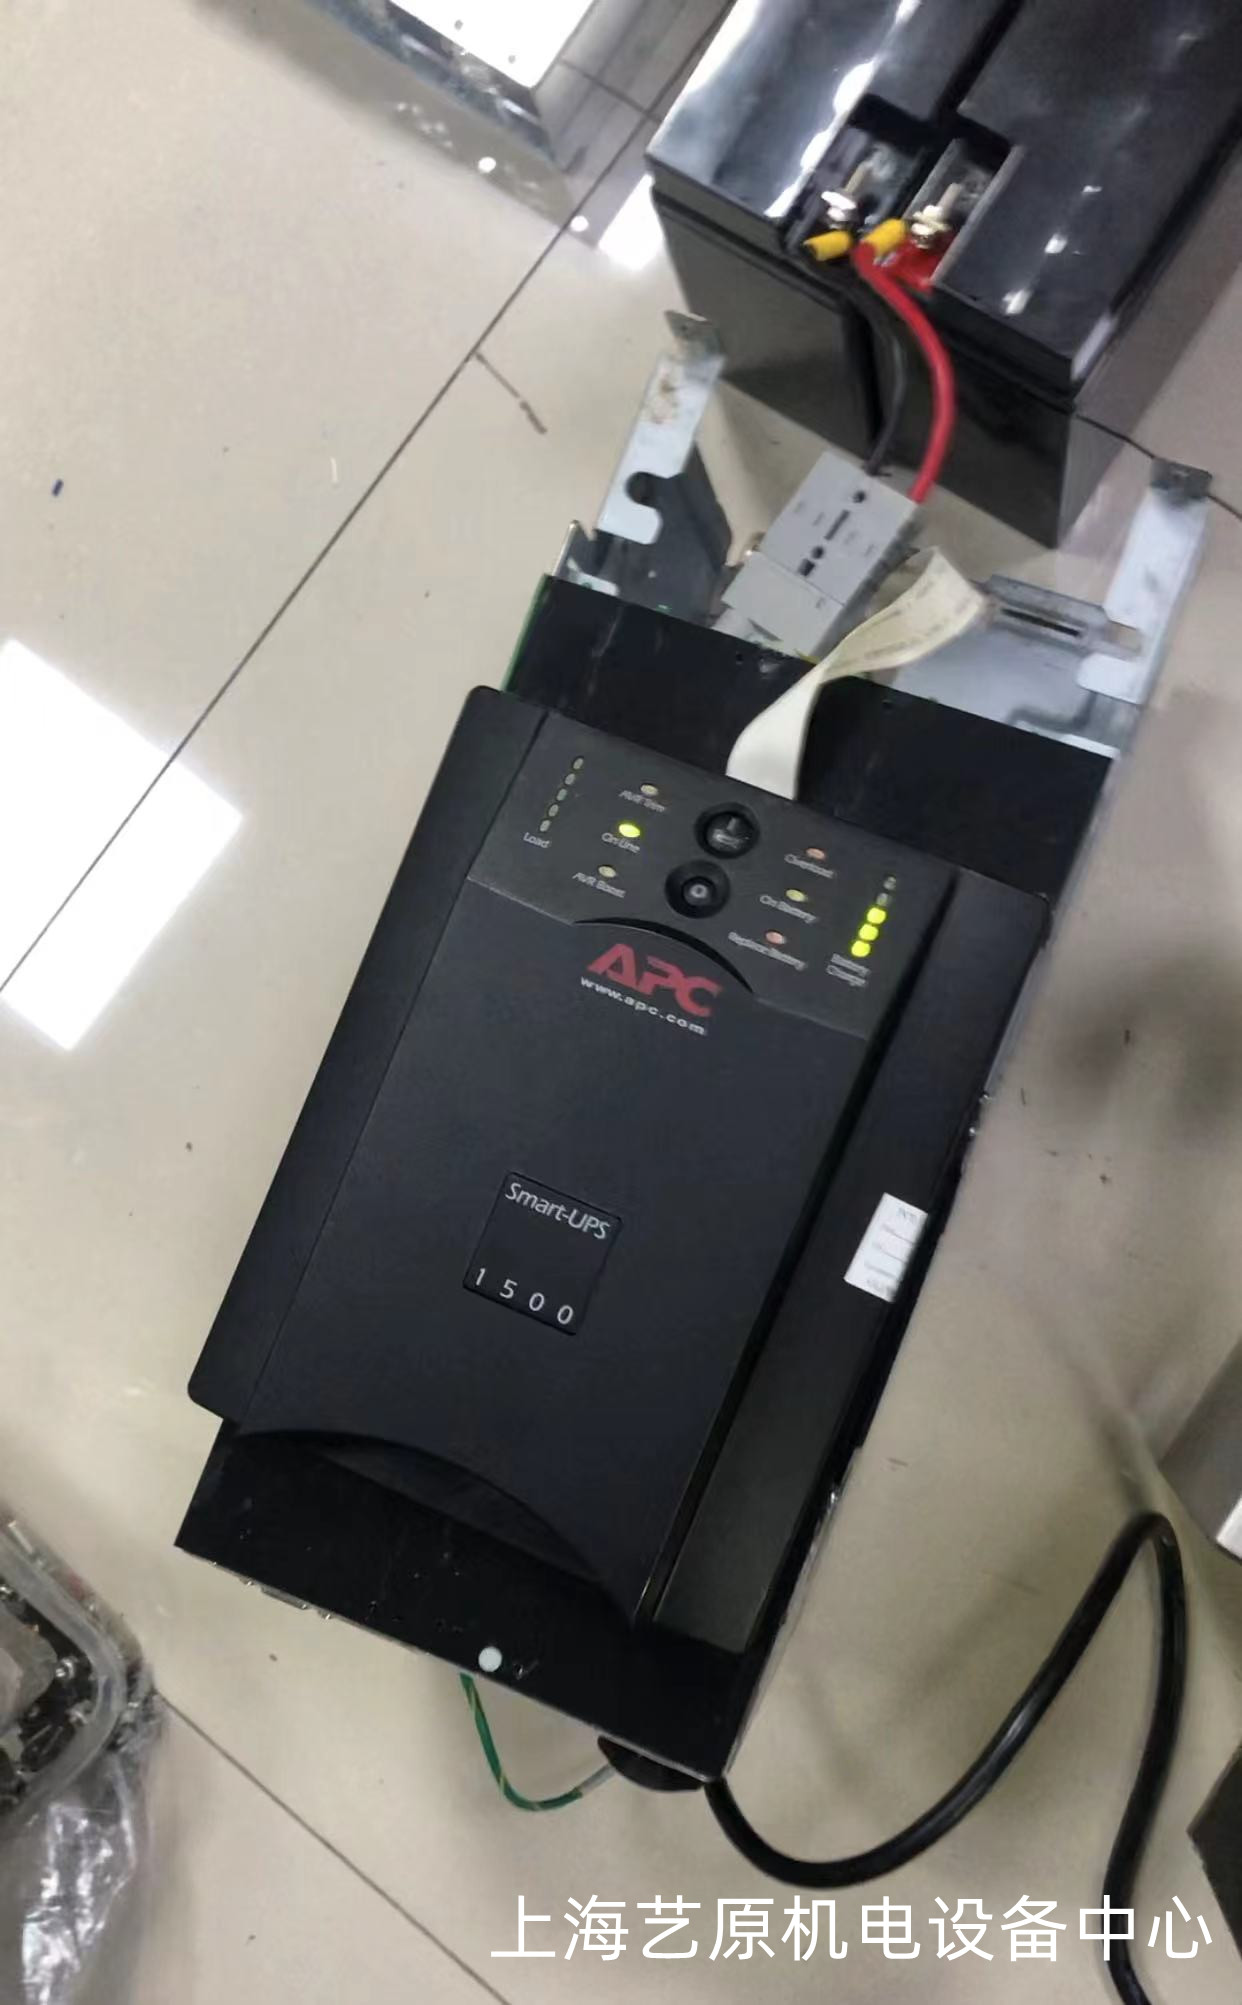 昭通APC-Smart-UPS-1500不间断电源维修维修 工业电源